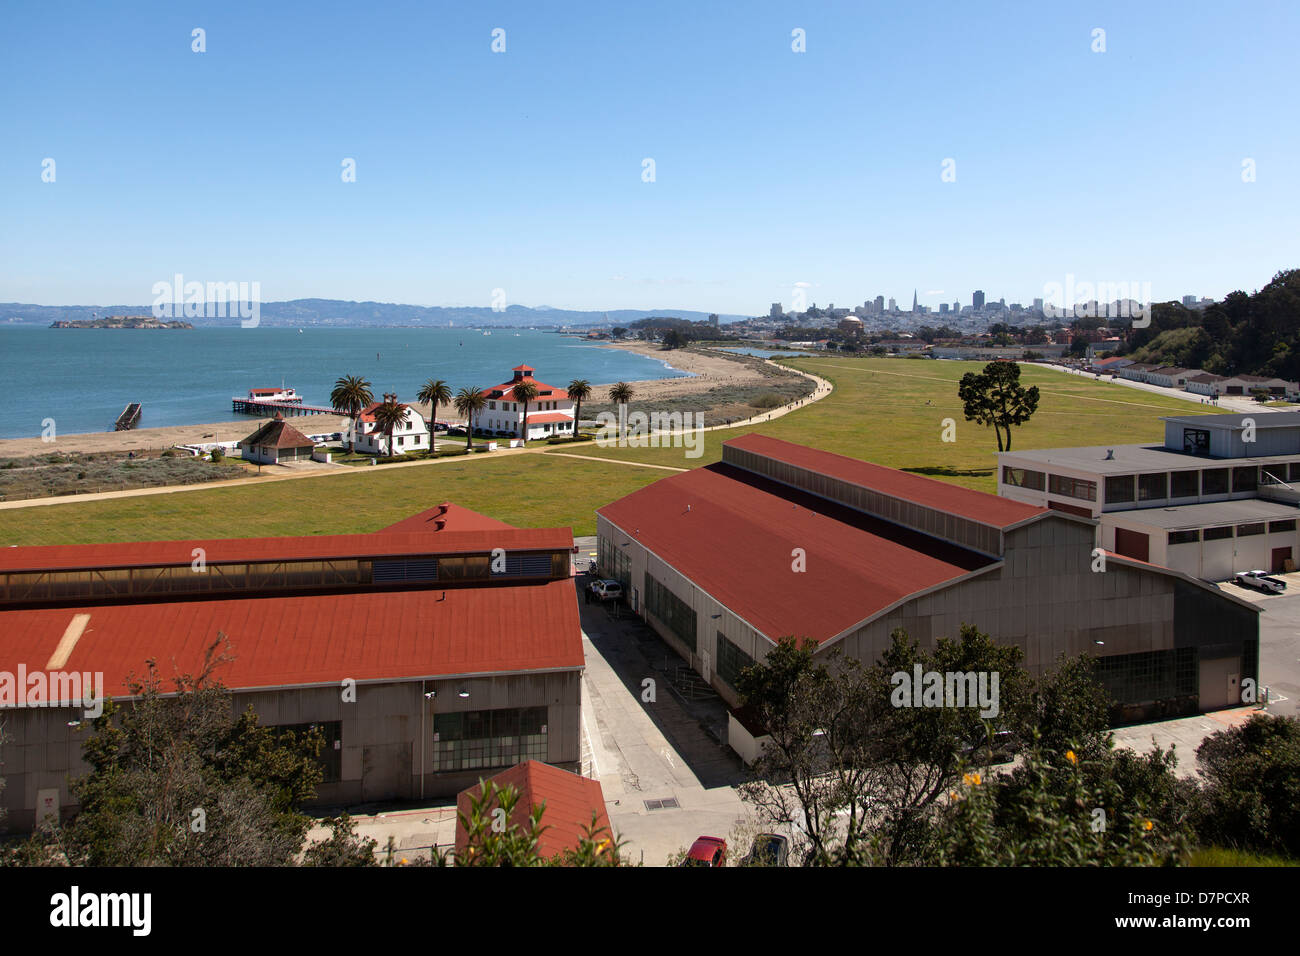 Rooftops of Crissy Field, San Francisco Bay, California, USA. Stock Photo